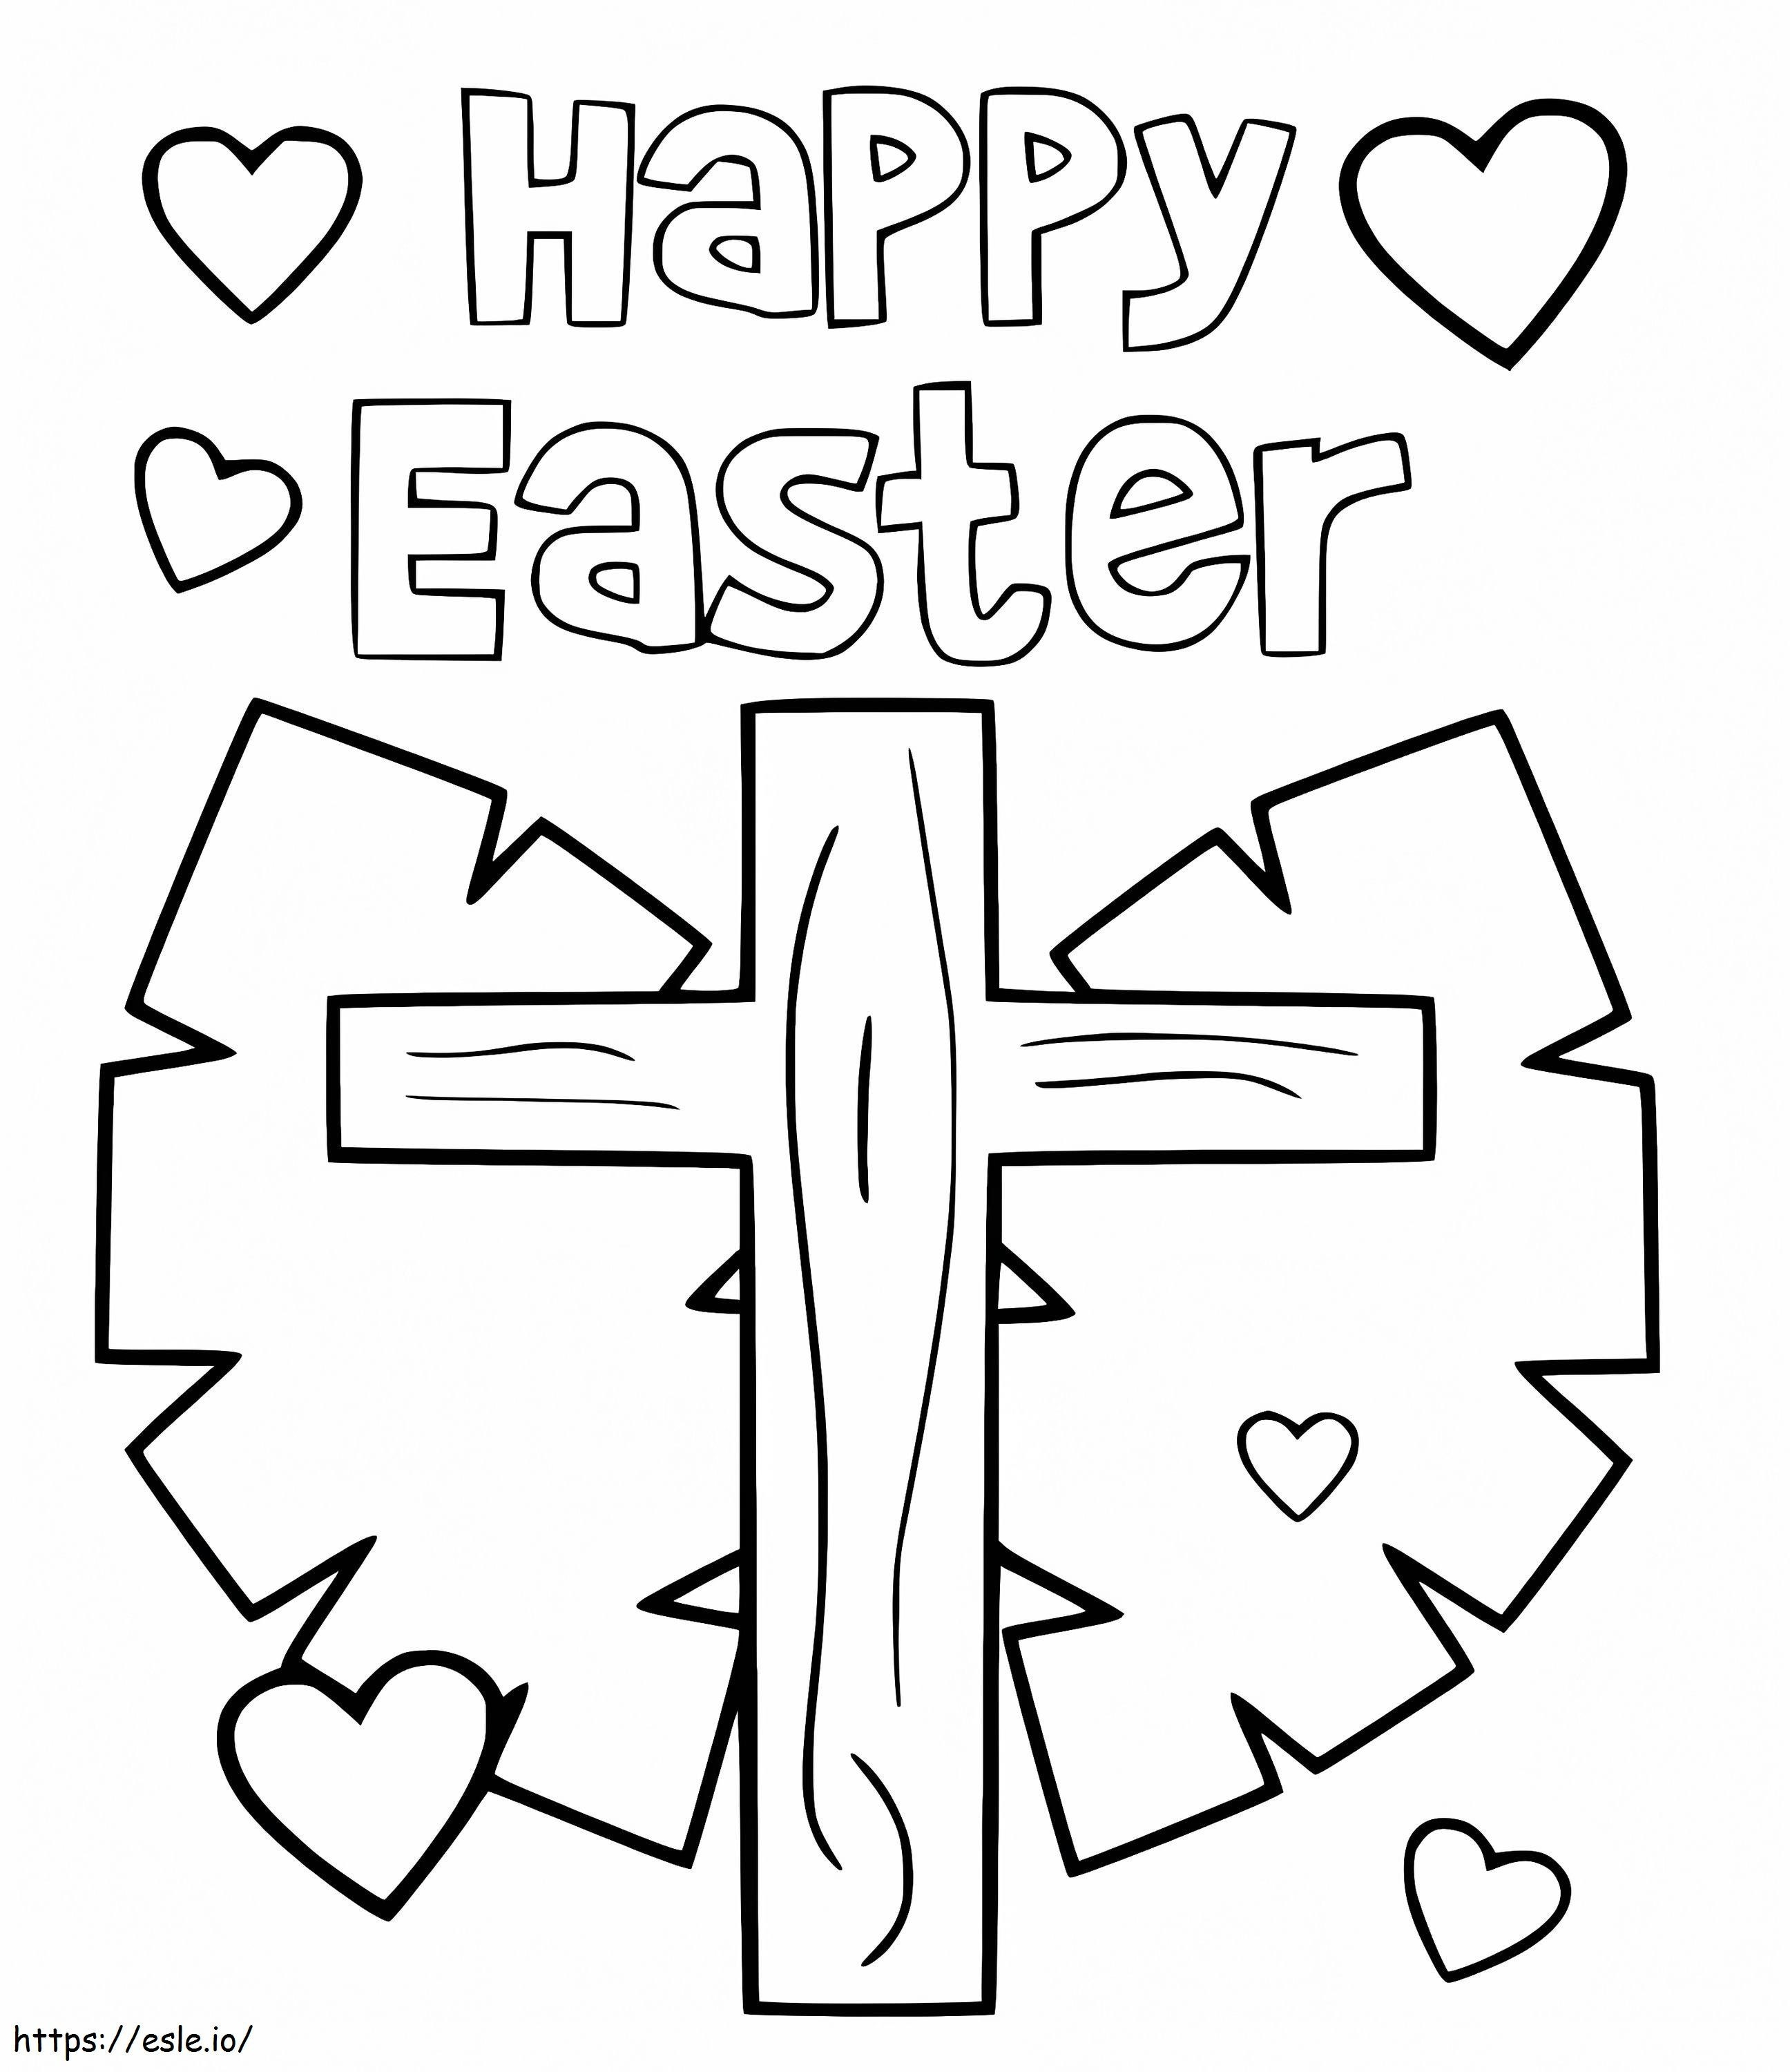 Frohe Ostern mit Osterkreuz ausmalbilder